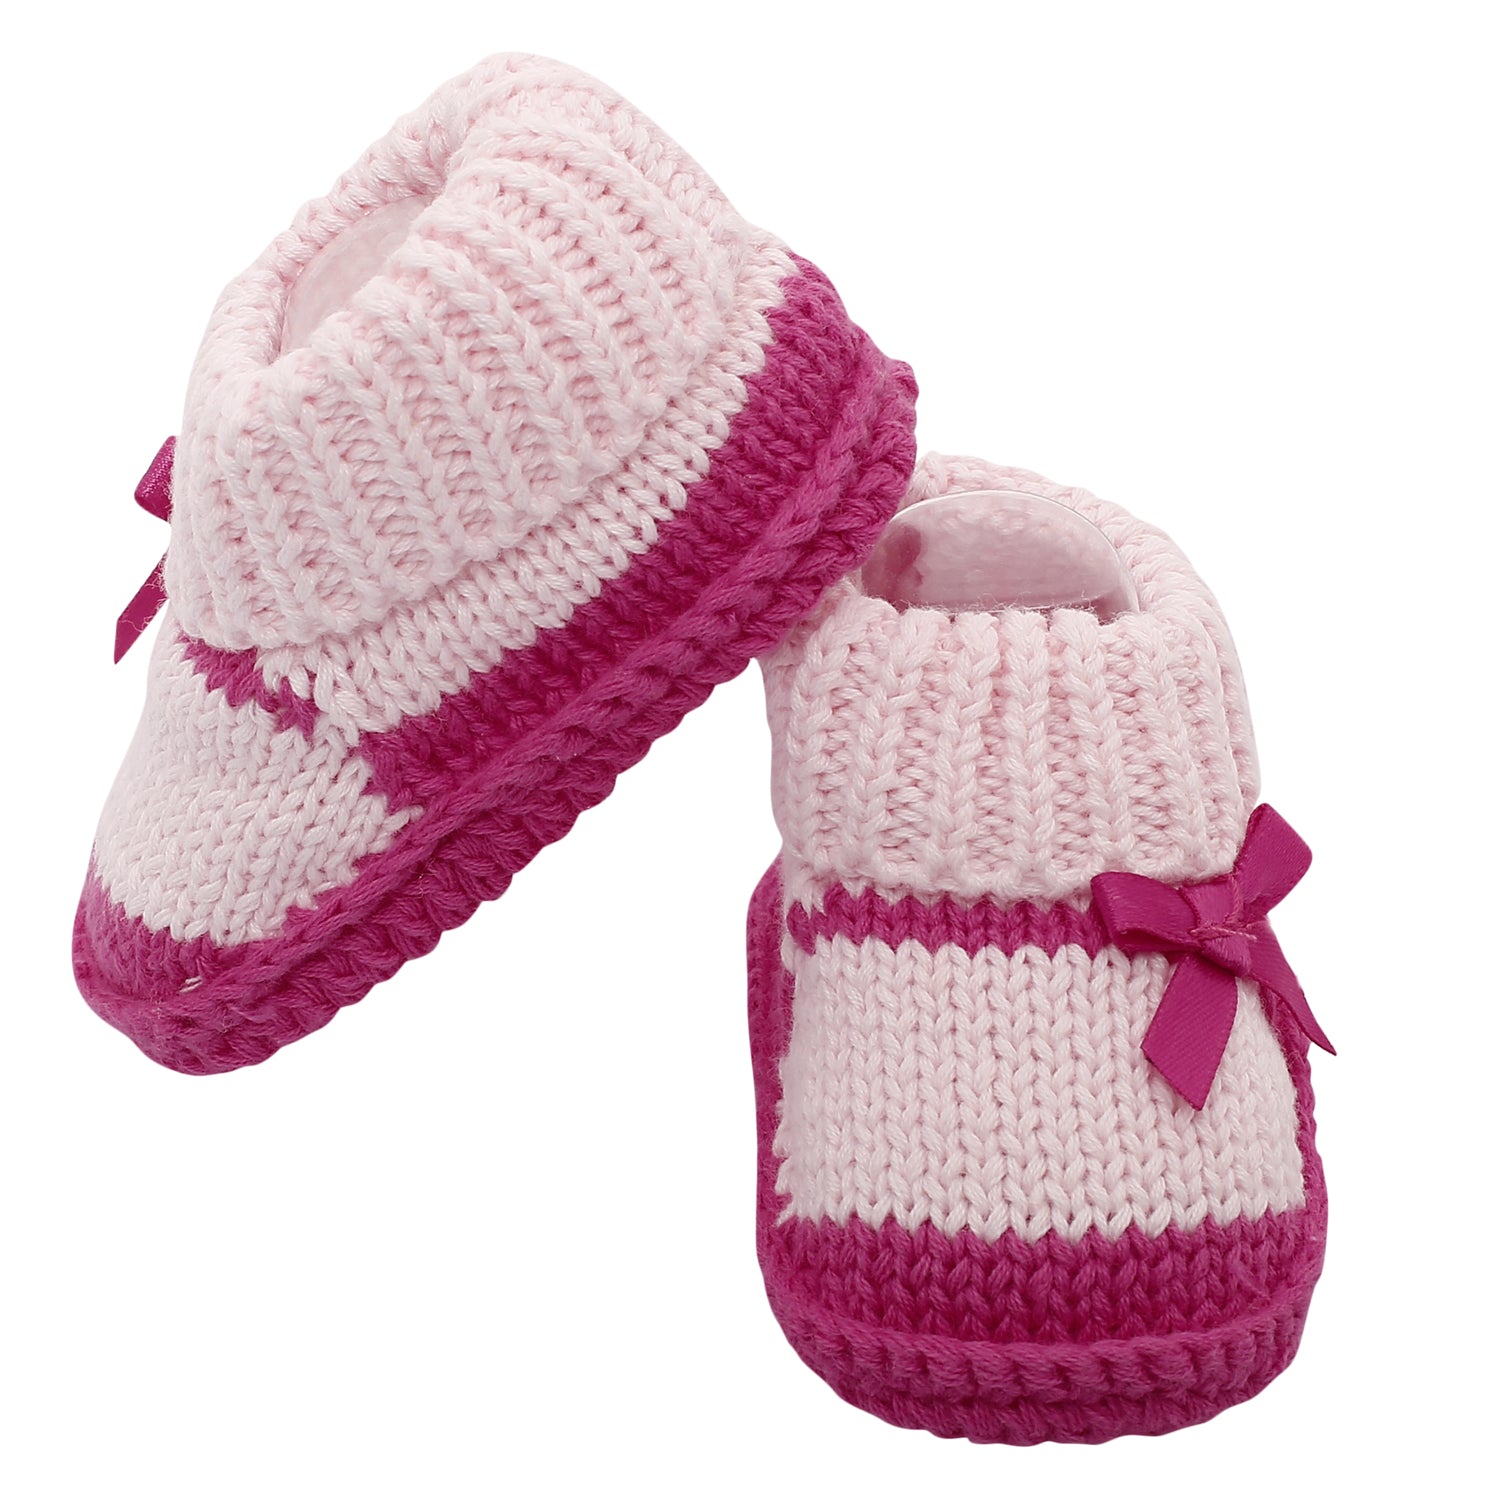 Baby Moo Sweet Bows Pink Socks Booties